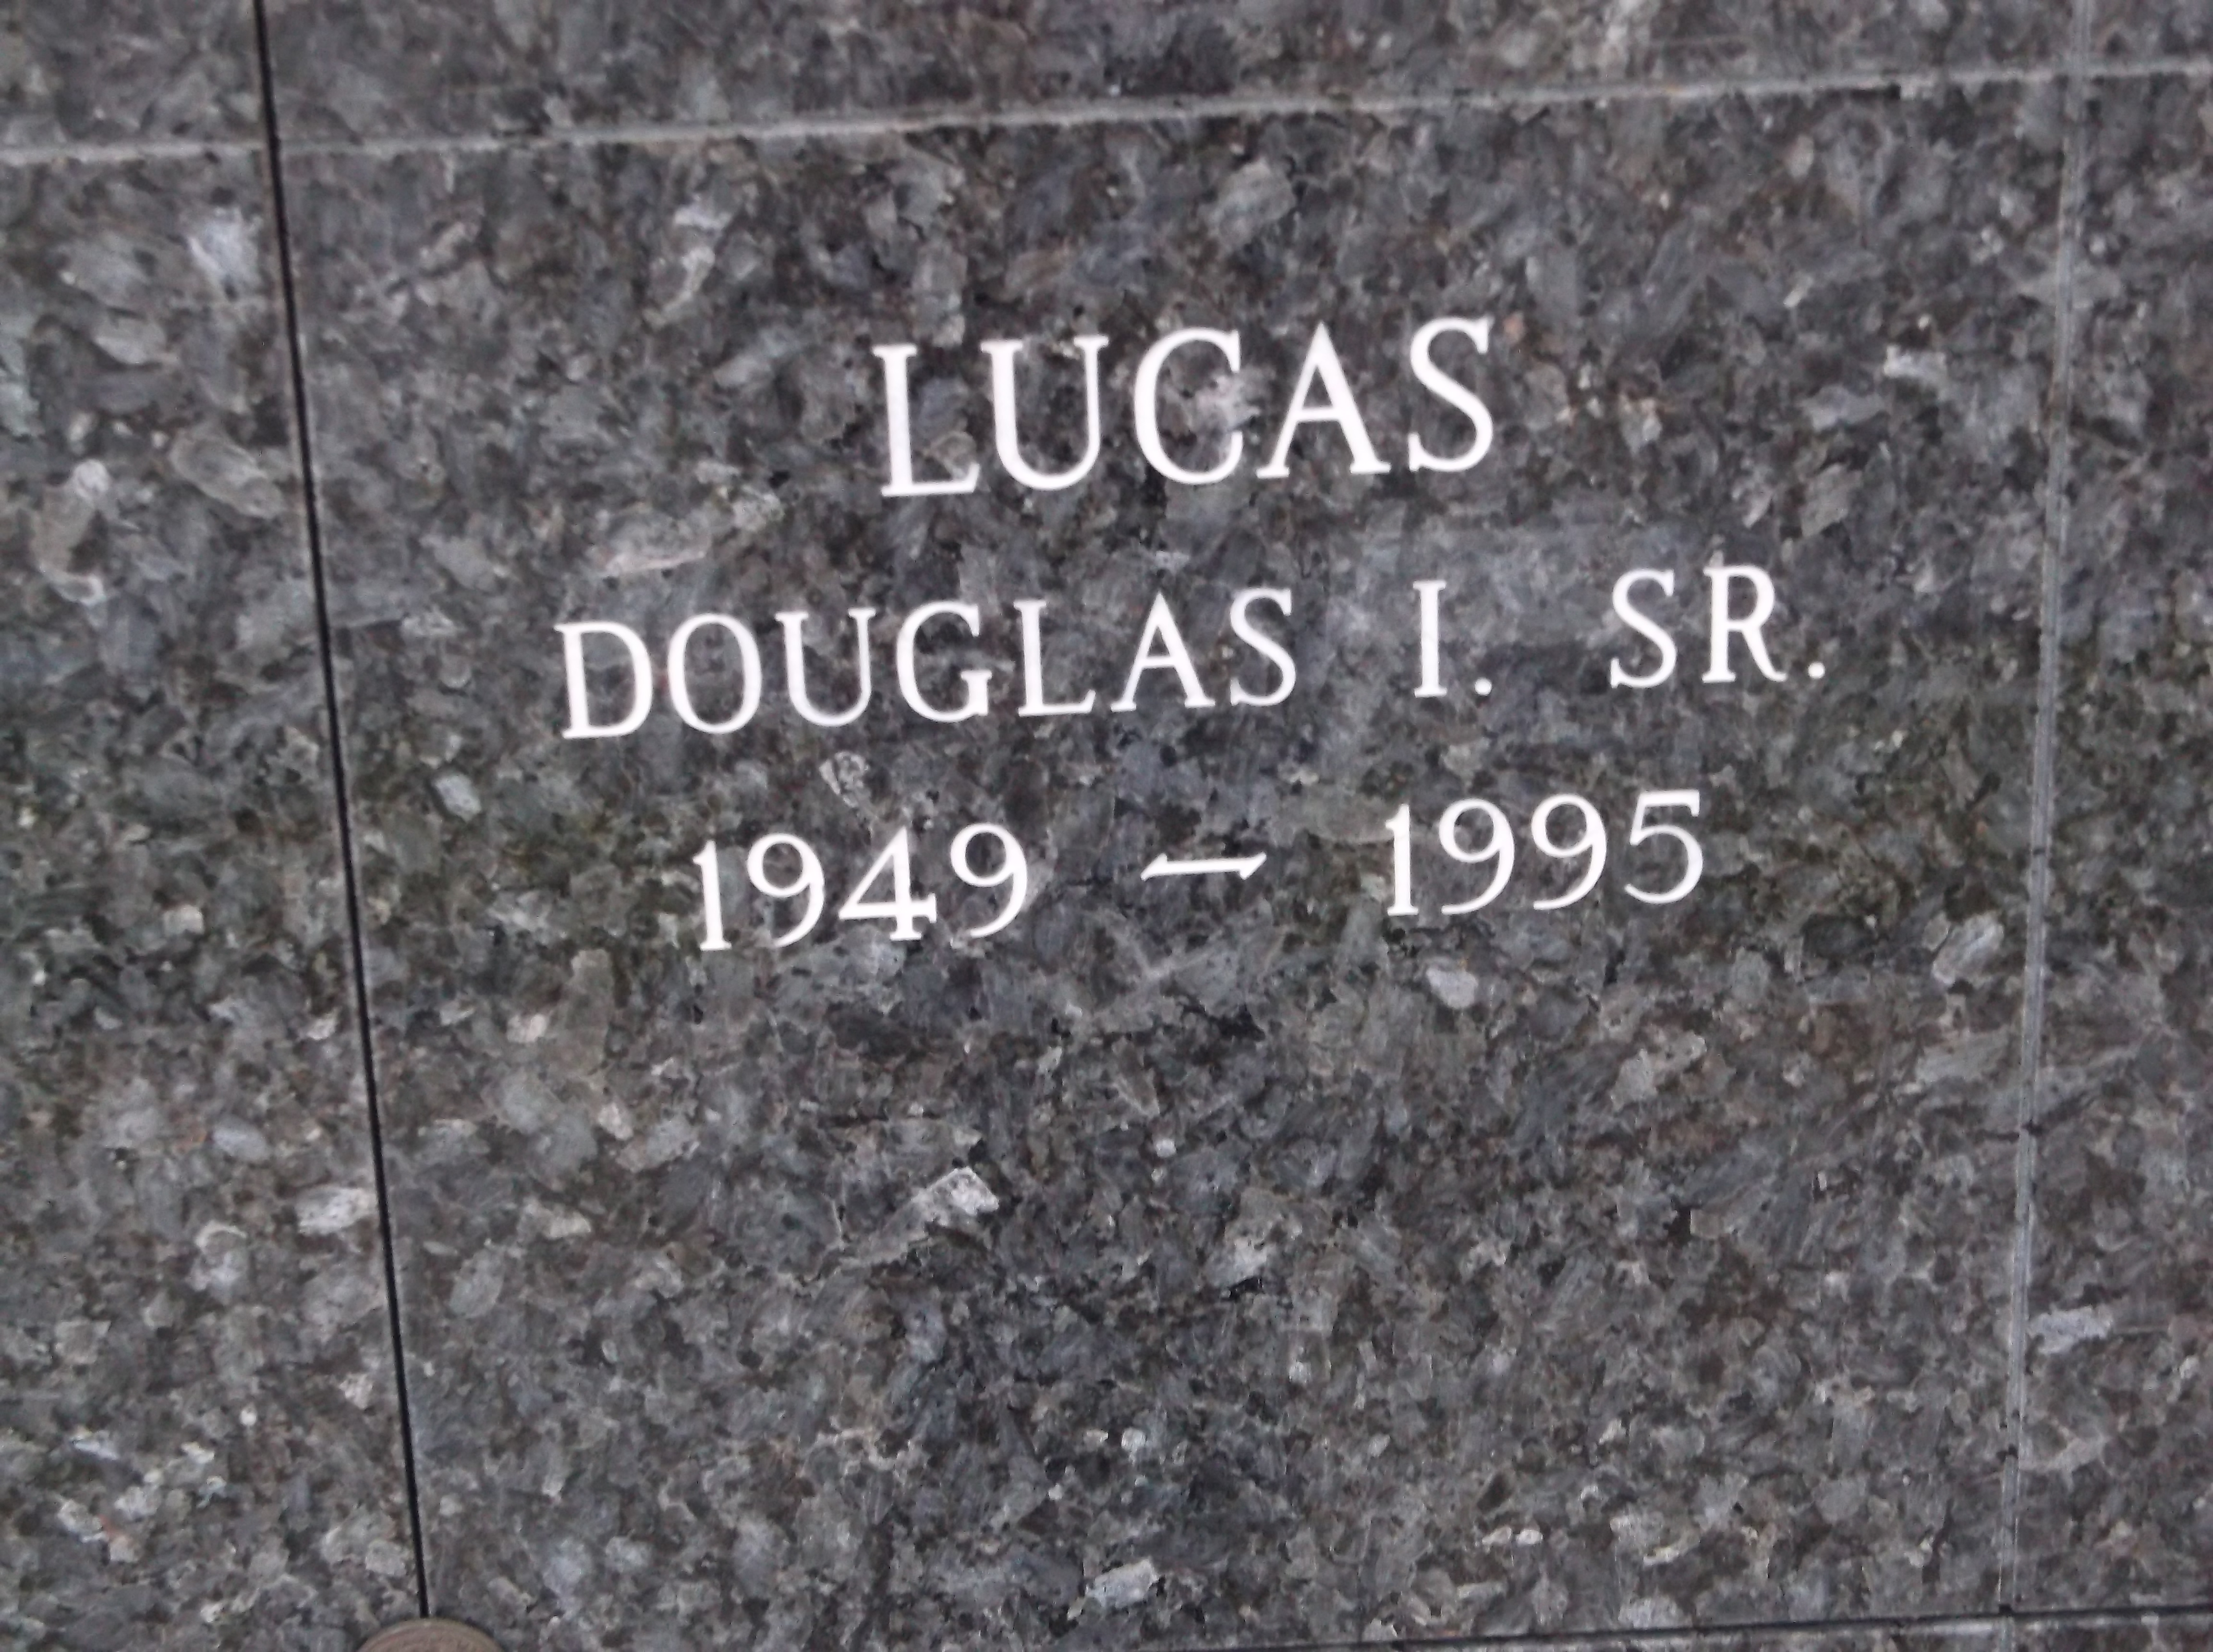 Douglas I Lucas, Sr